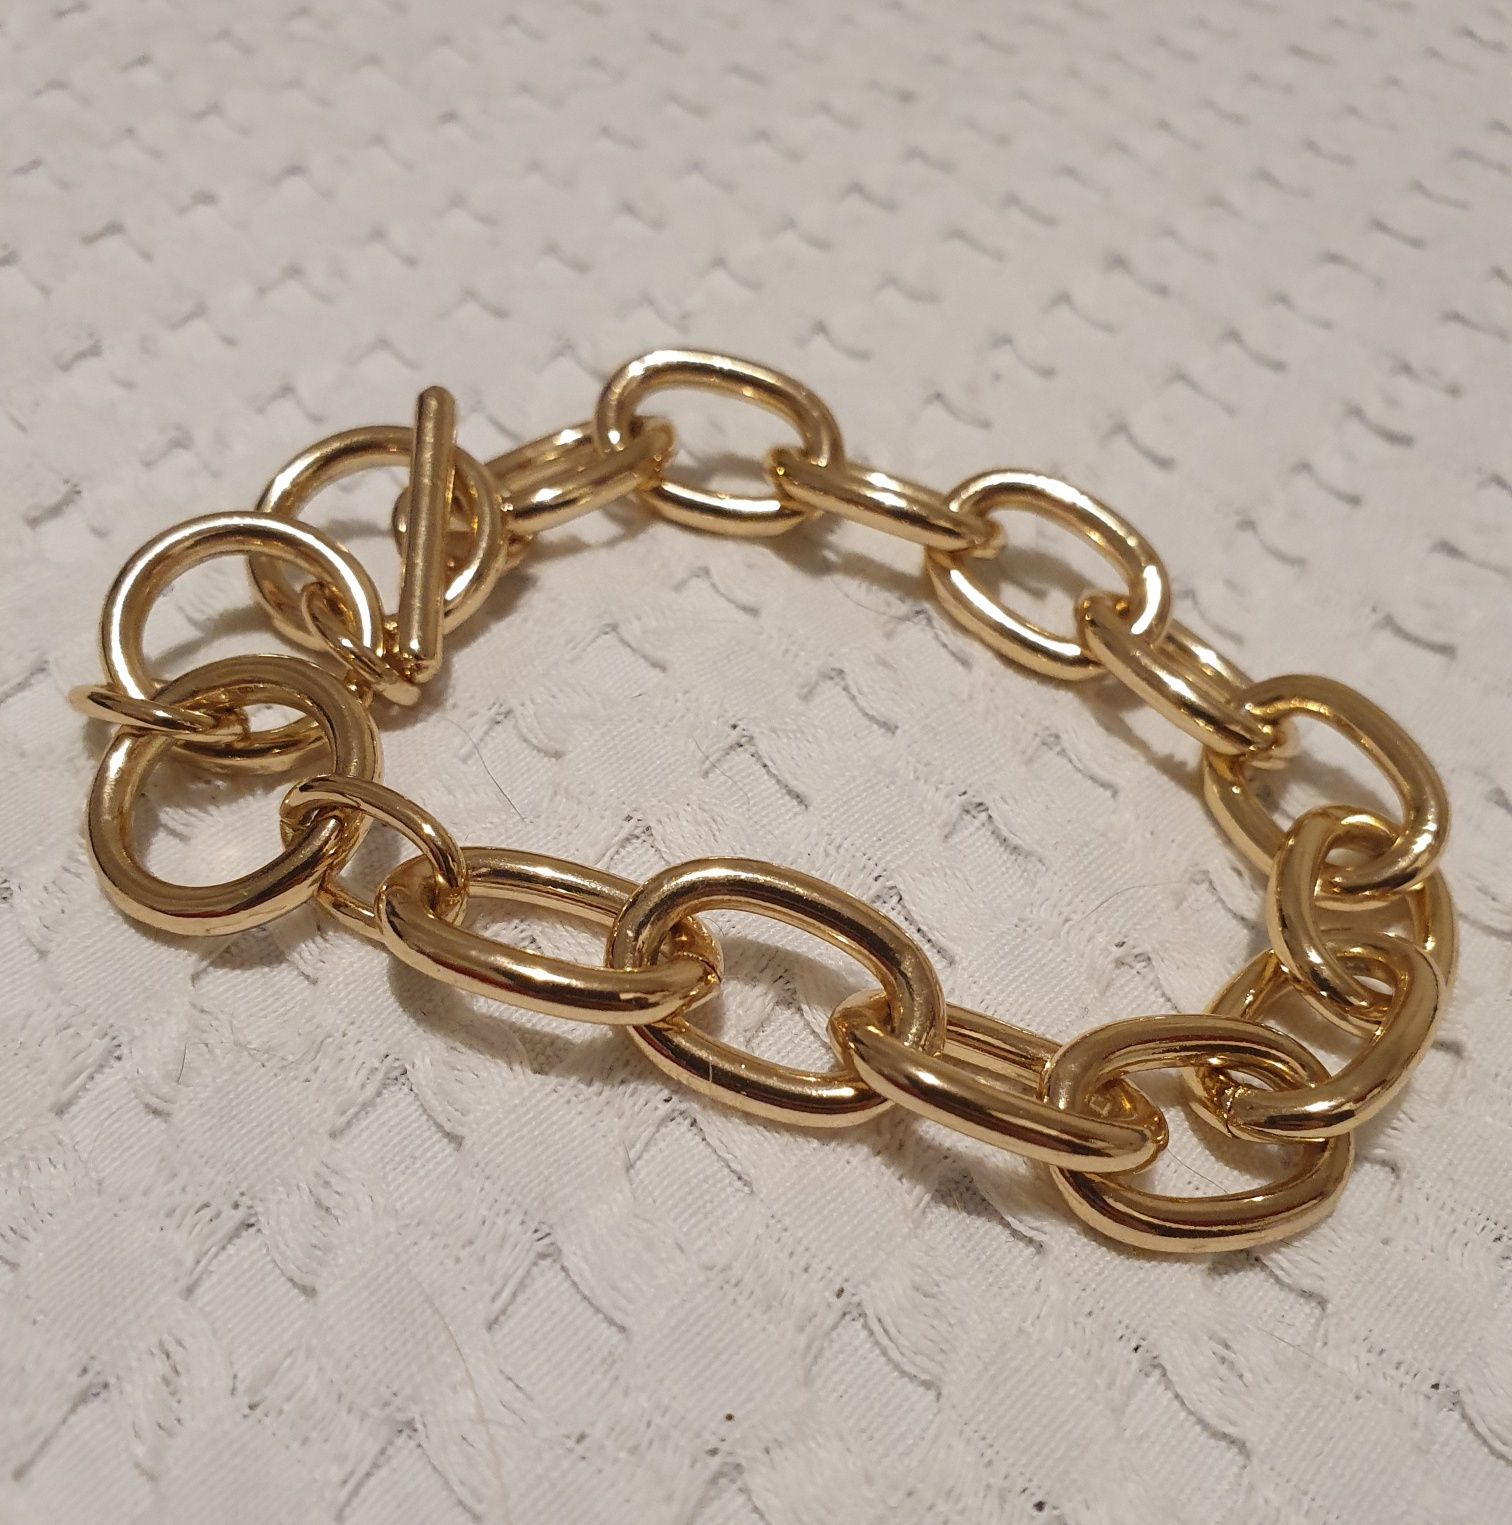 Bransoletka, łańcuch, metalowa w kolorze złota